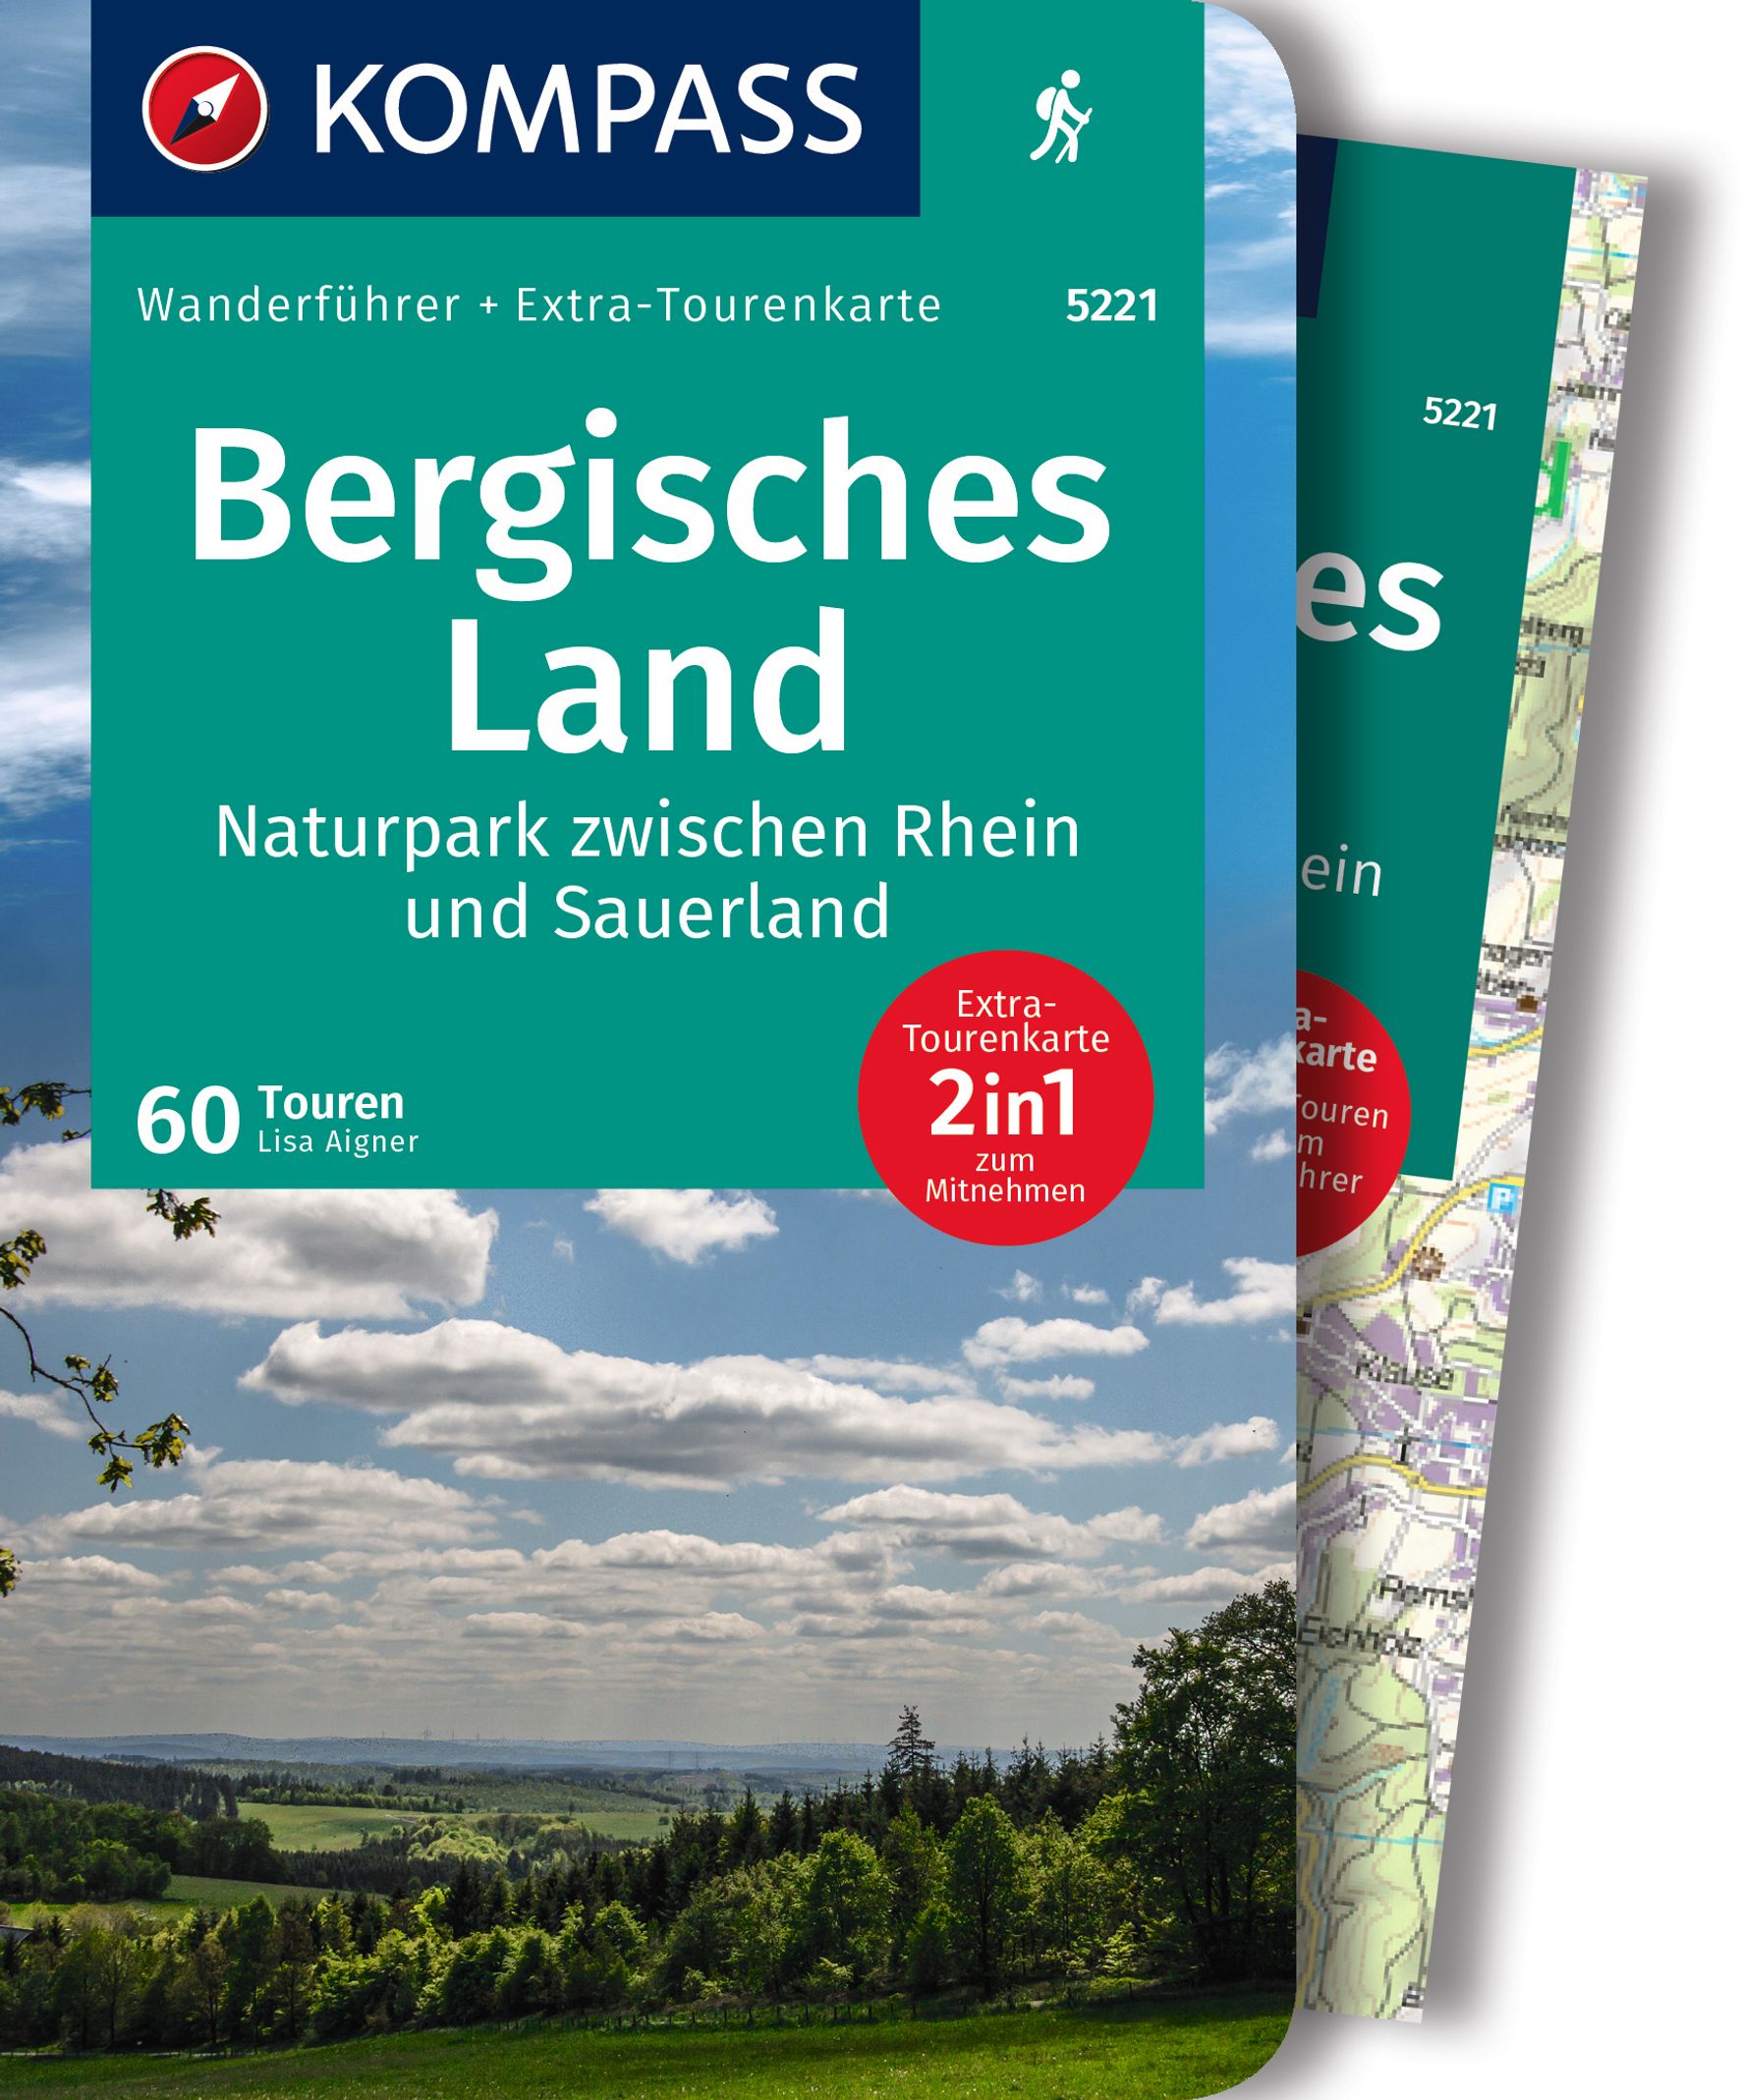 MAIRDUMONT Bergisches Land, Naturpark zwischen Rhein und Sauerland, 60 Touren mit Extra-Tourenkarte